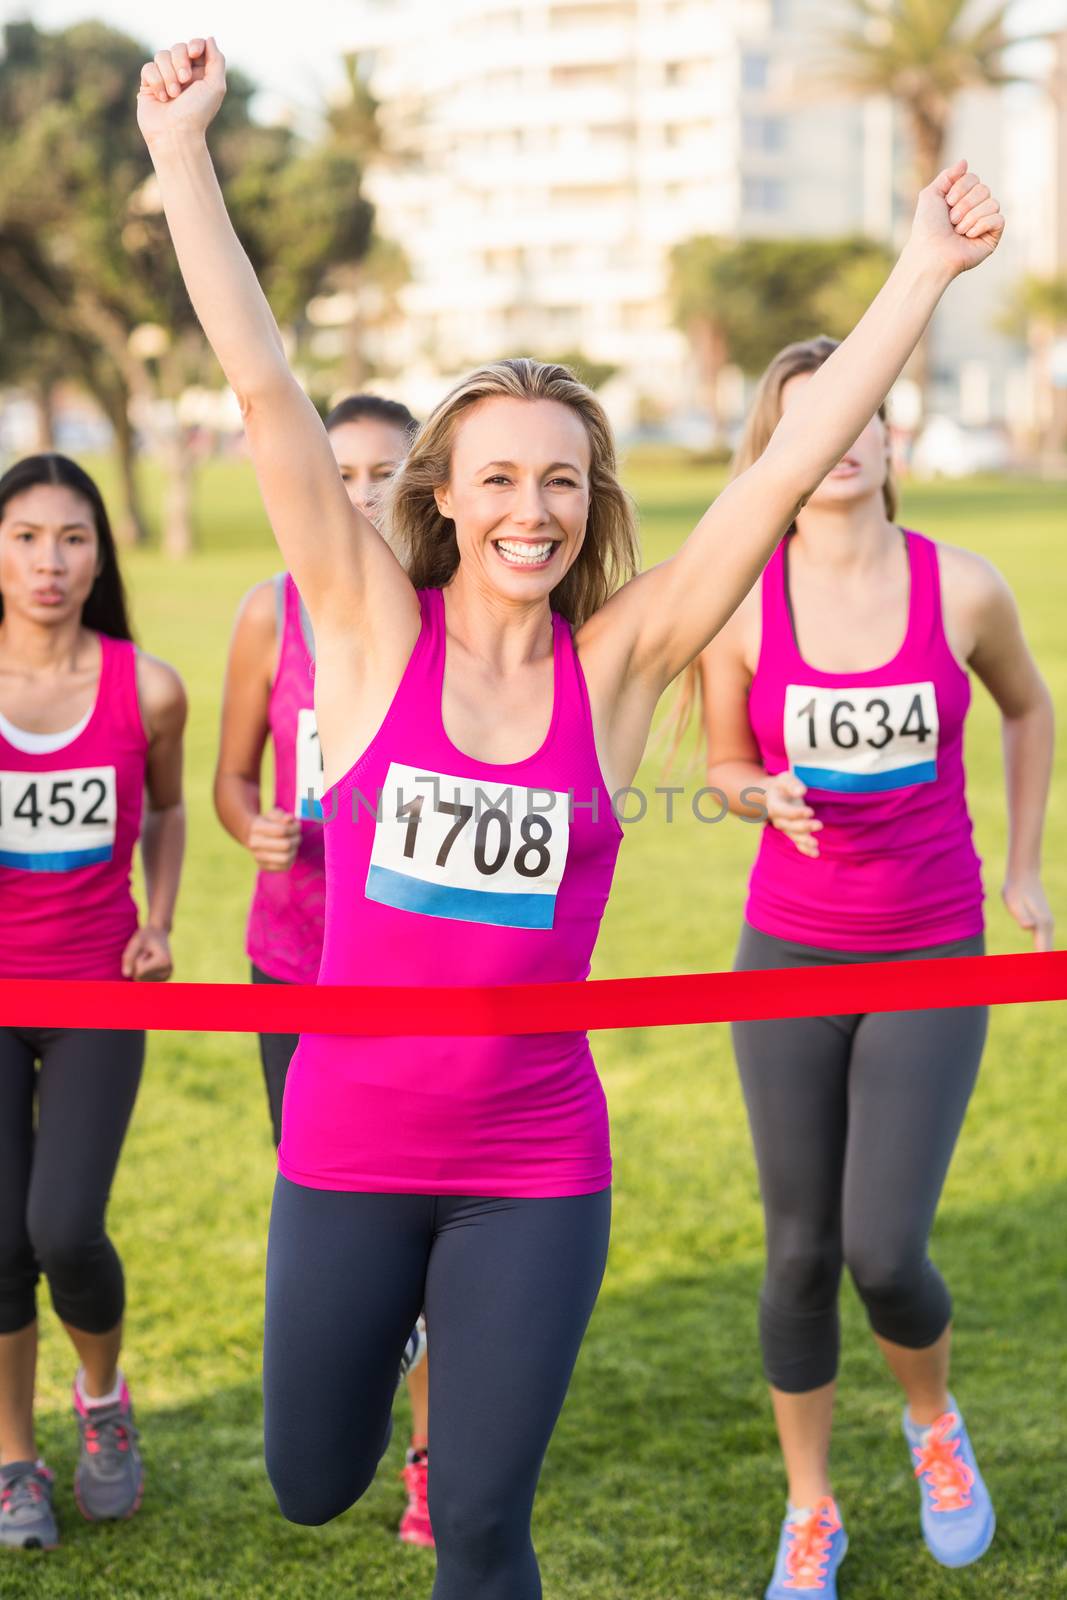 Portrait of cheering blonde winning breast cancer marathon in parkland